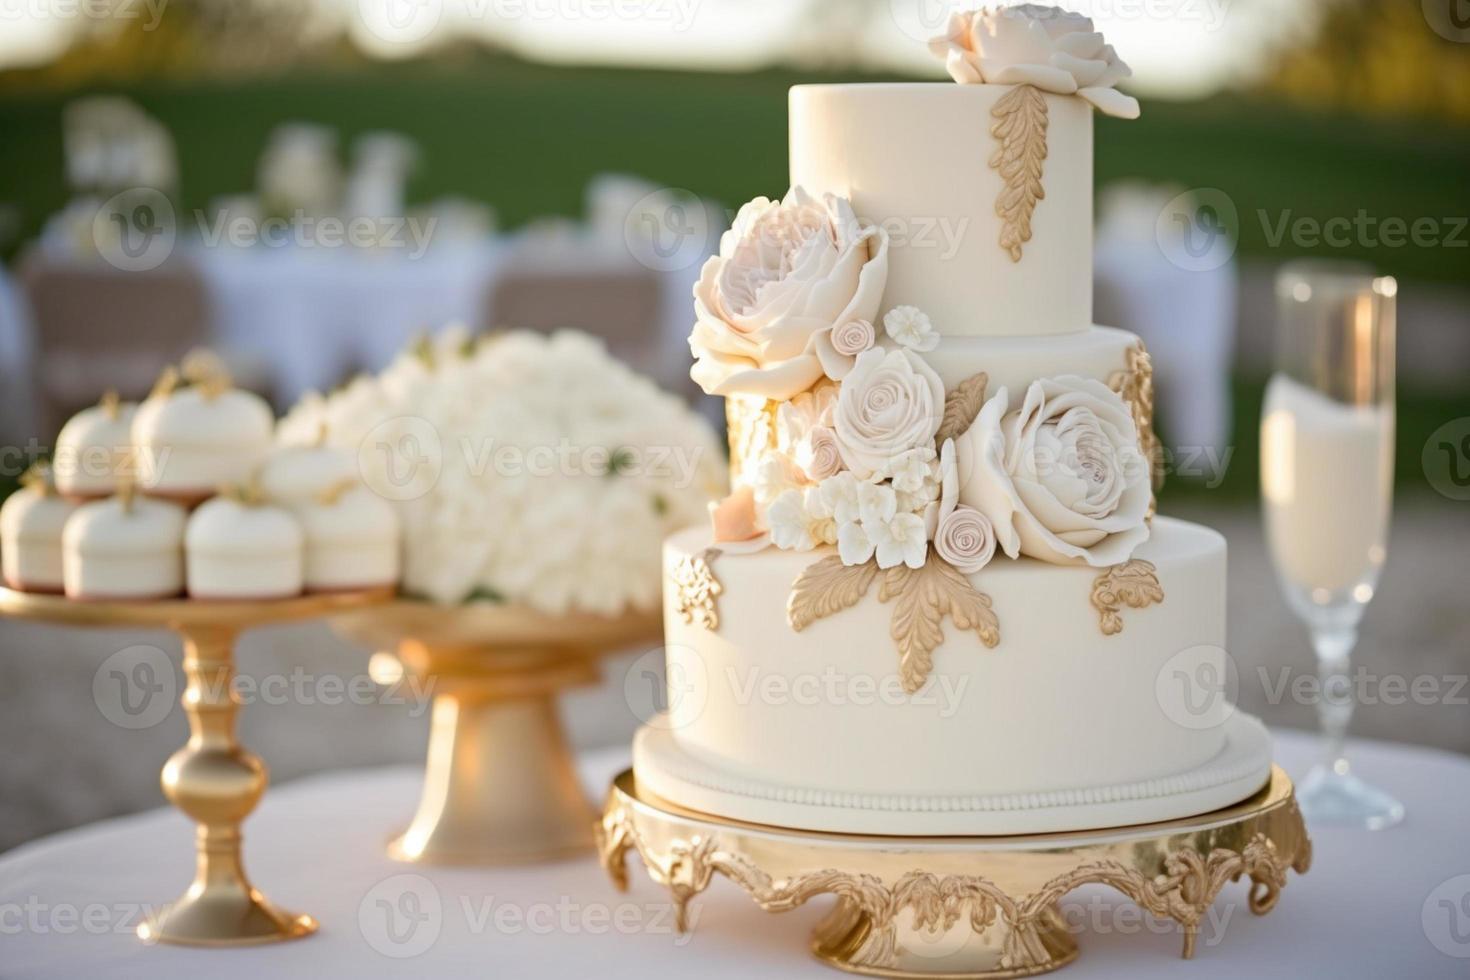 bröllop kaka med blomma detaljer på en bord vad gör bröllop kaka betyda foto